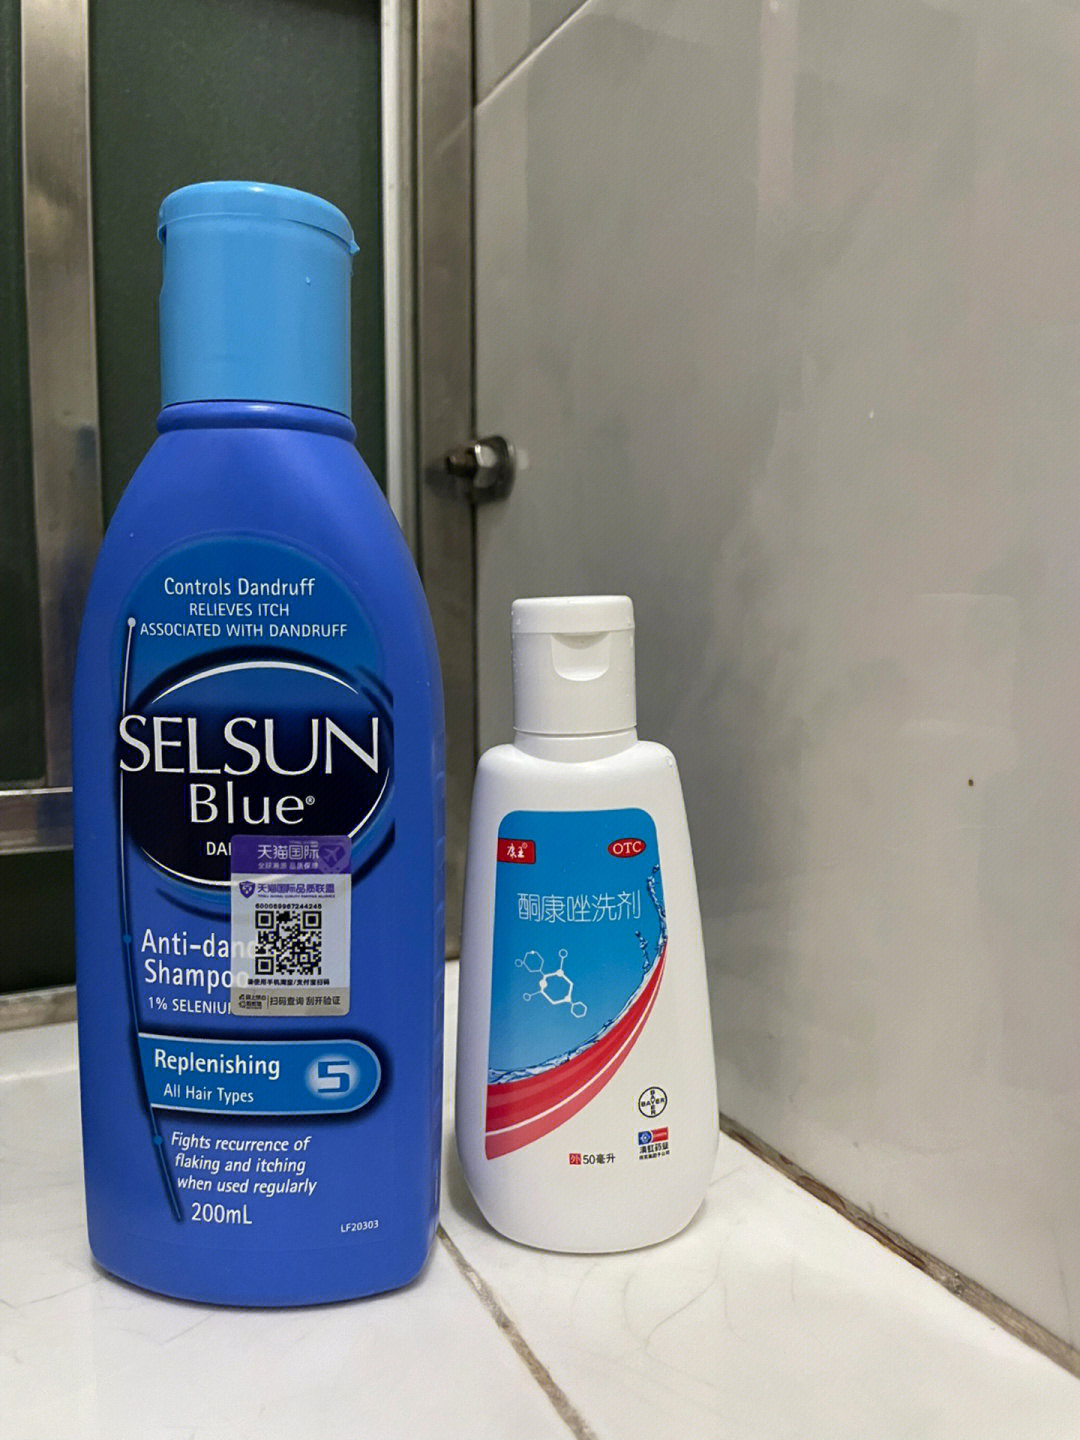 去屑洗发水好推荐[星r]图2: selsun 洗发水(蓝色),[星r]图3: 康王 